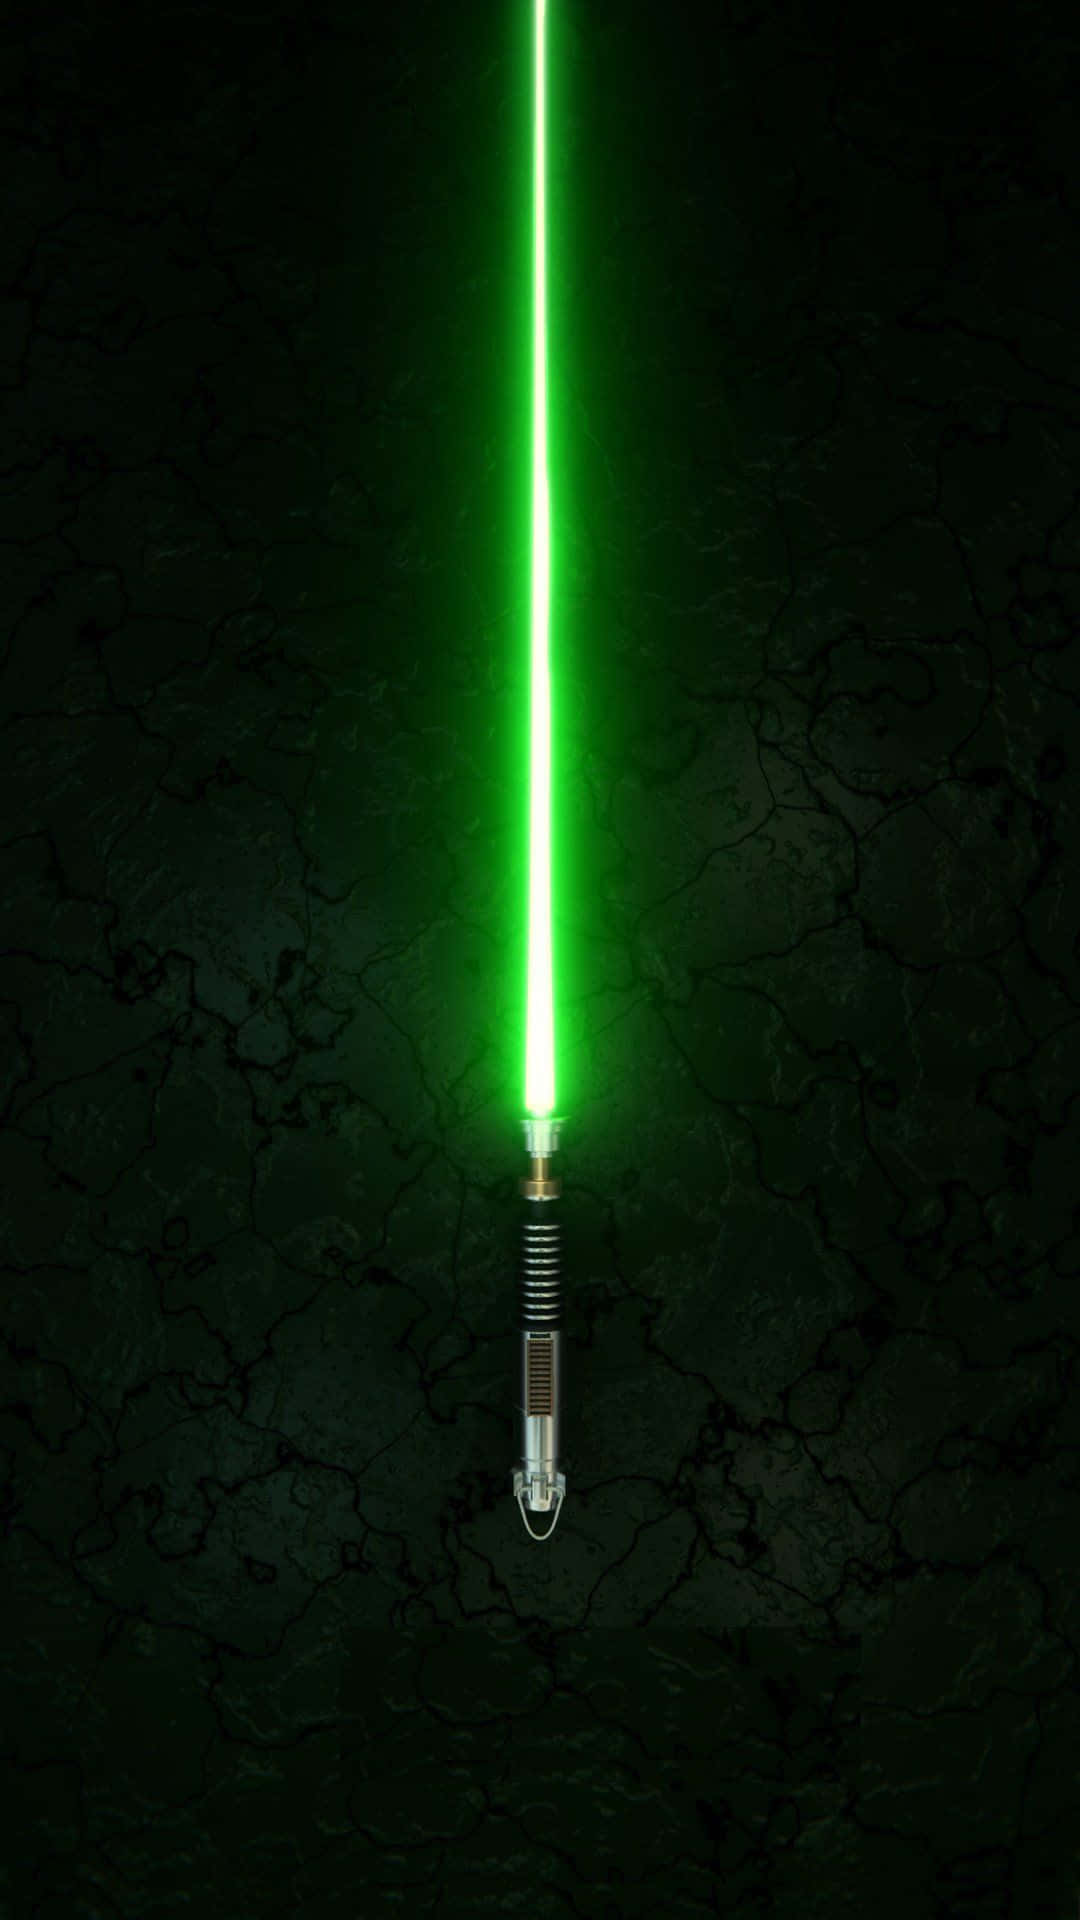 Einstrahl Der Hoffnung Und Kraft - Das Jedi-lichtschwert Wallpaper